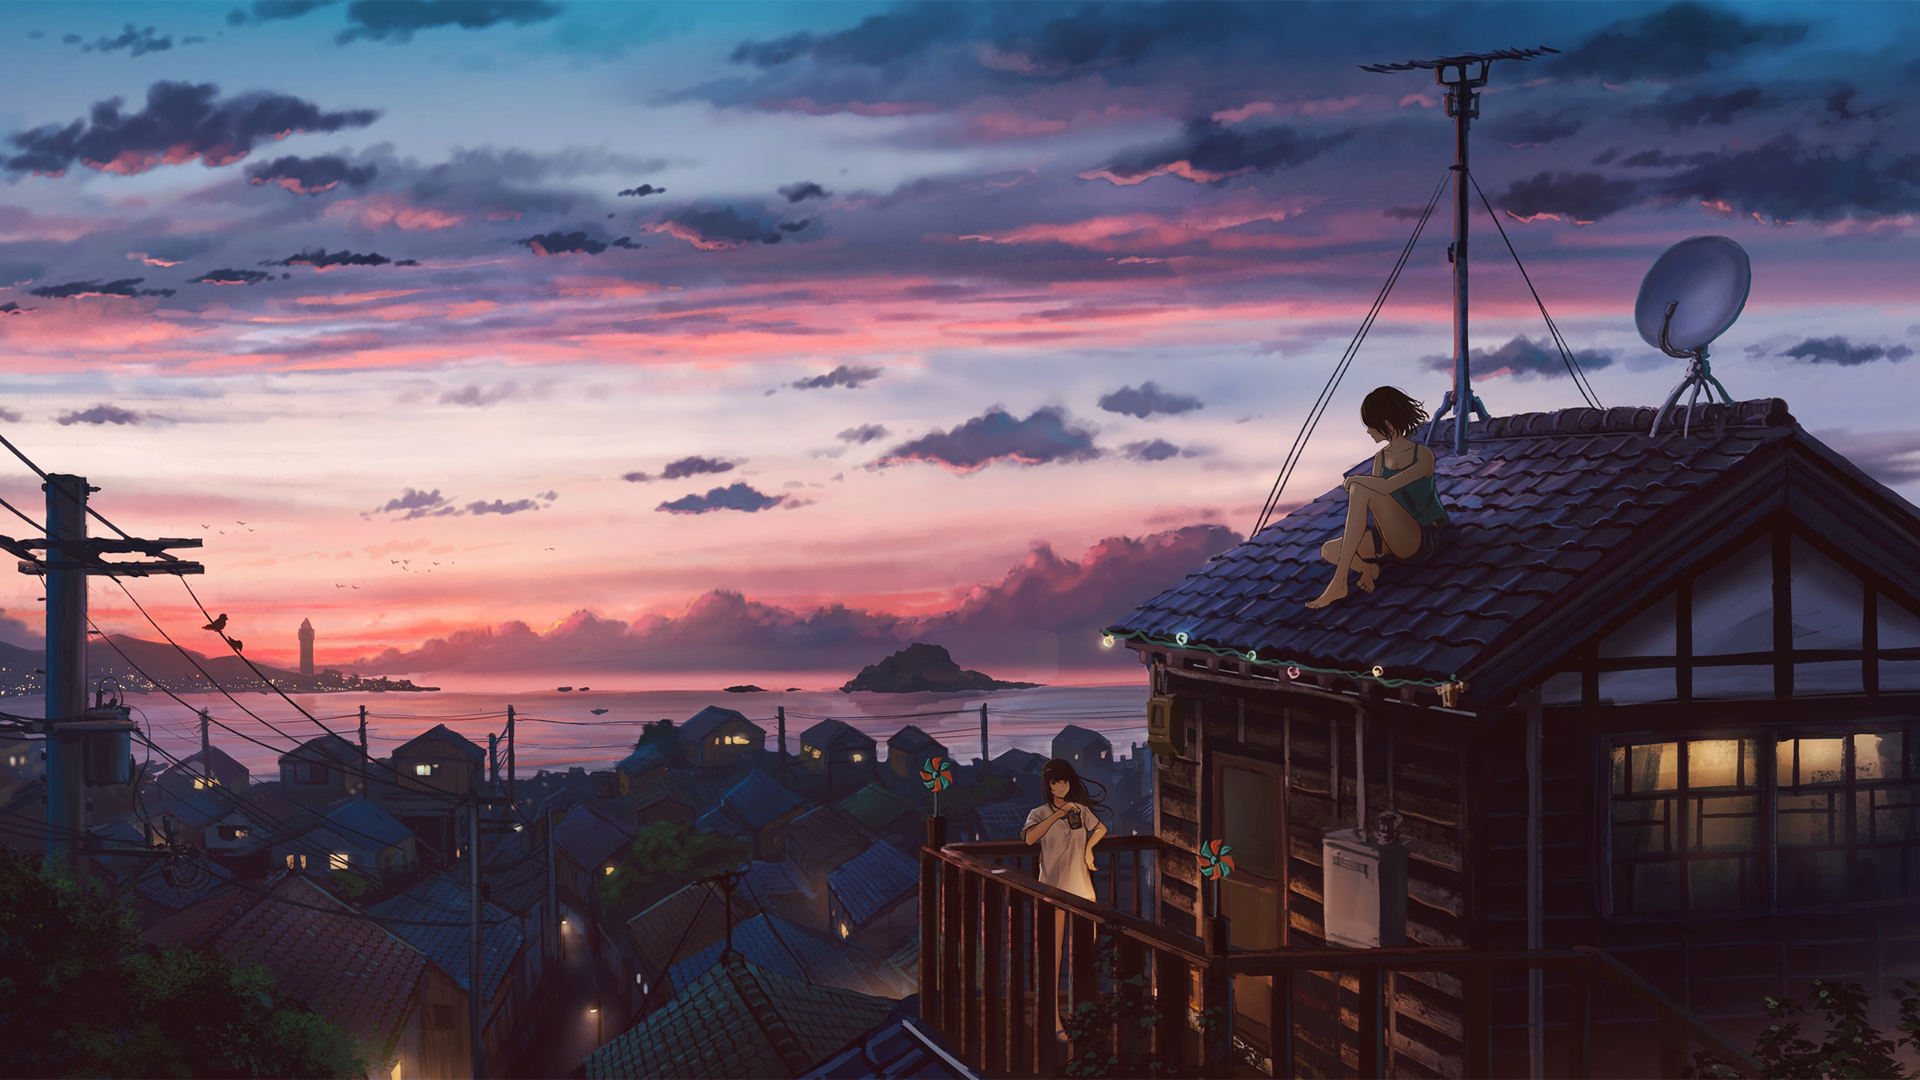 海边的小镇 坐在屋顶的女孩 唯美动漫风景壁纸